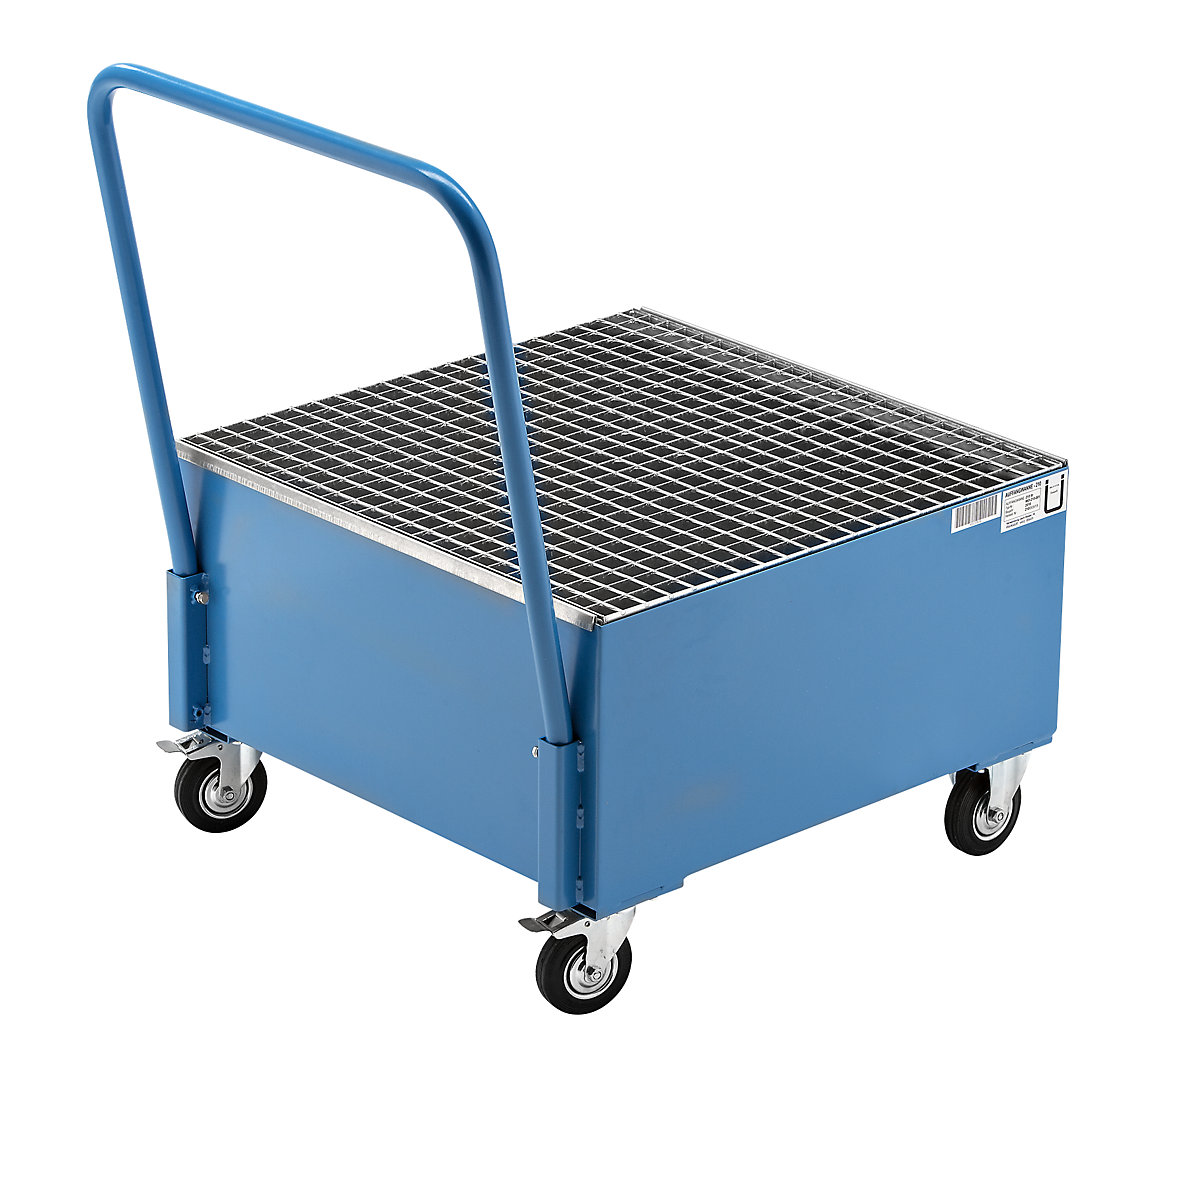 Mobile sump tray made of sheet steel – eurokraft basic